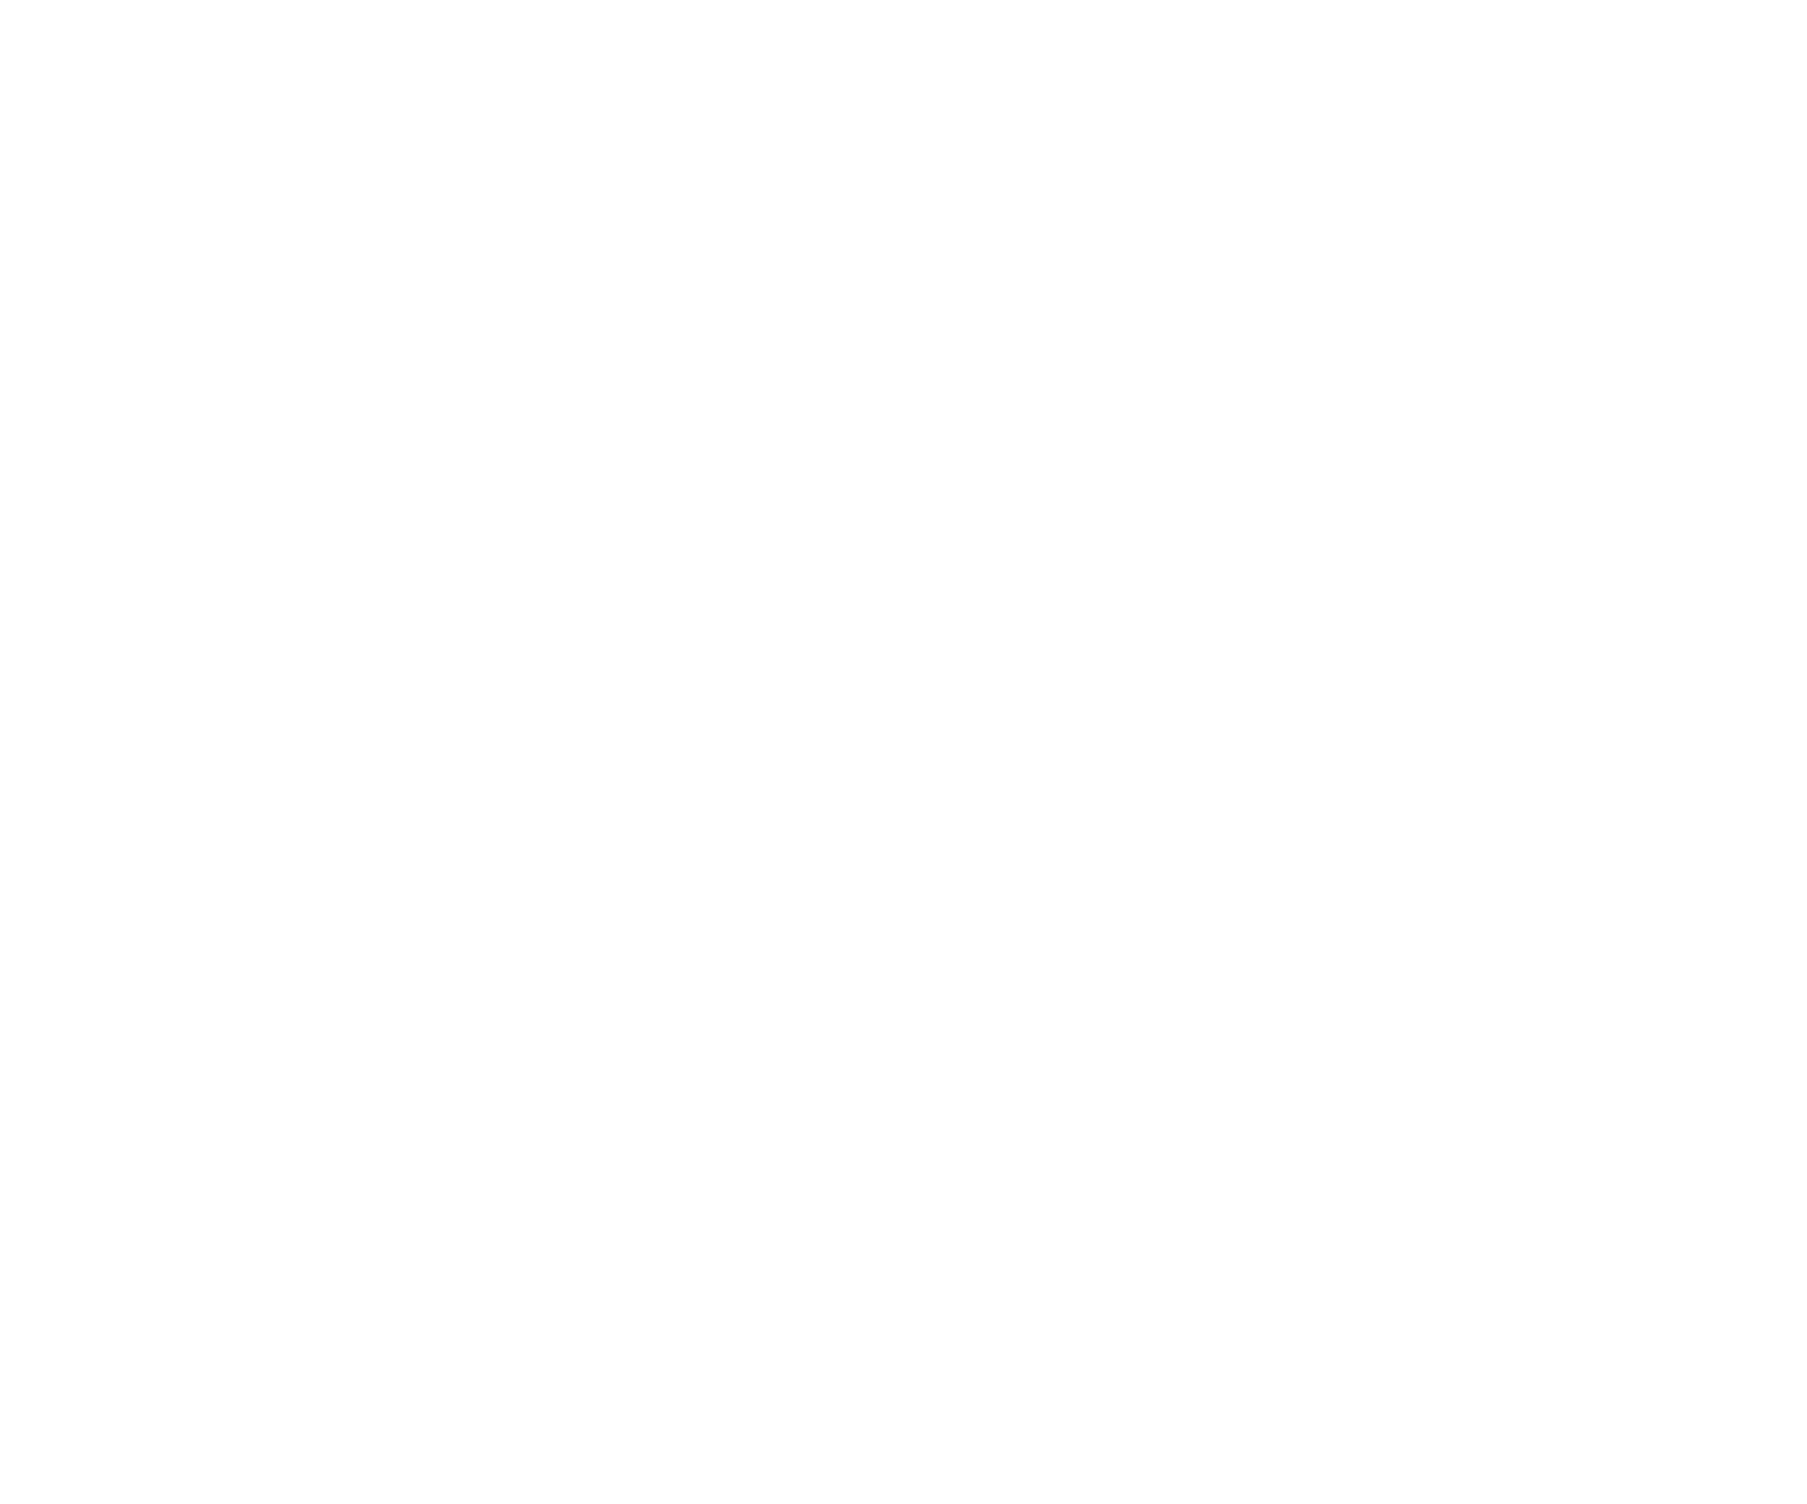 GTR MENA 2021 Virtual